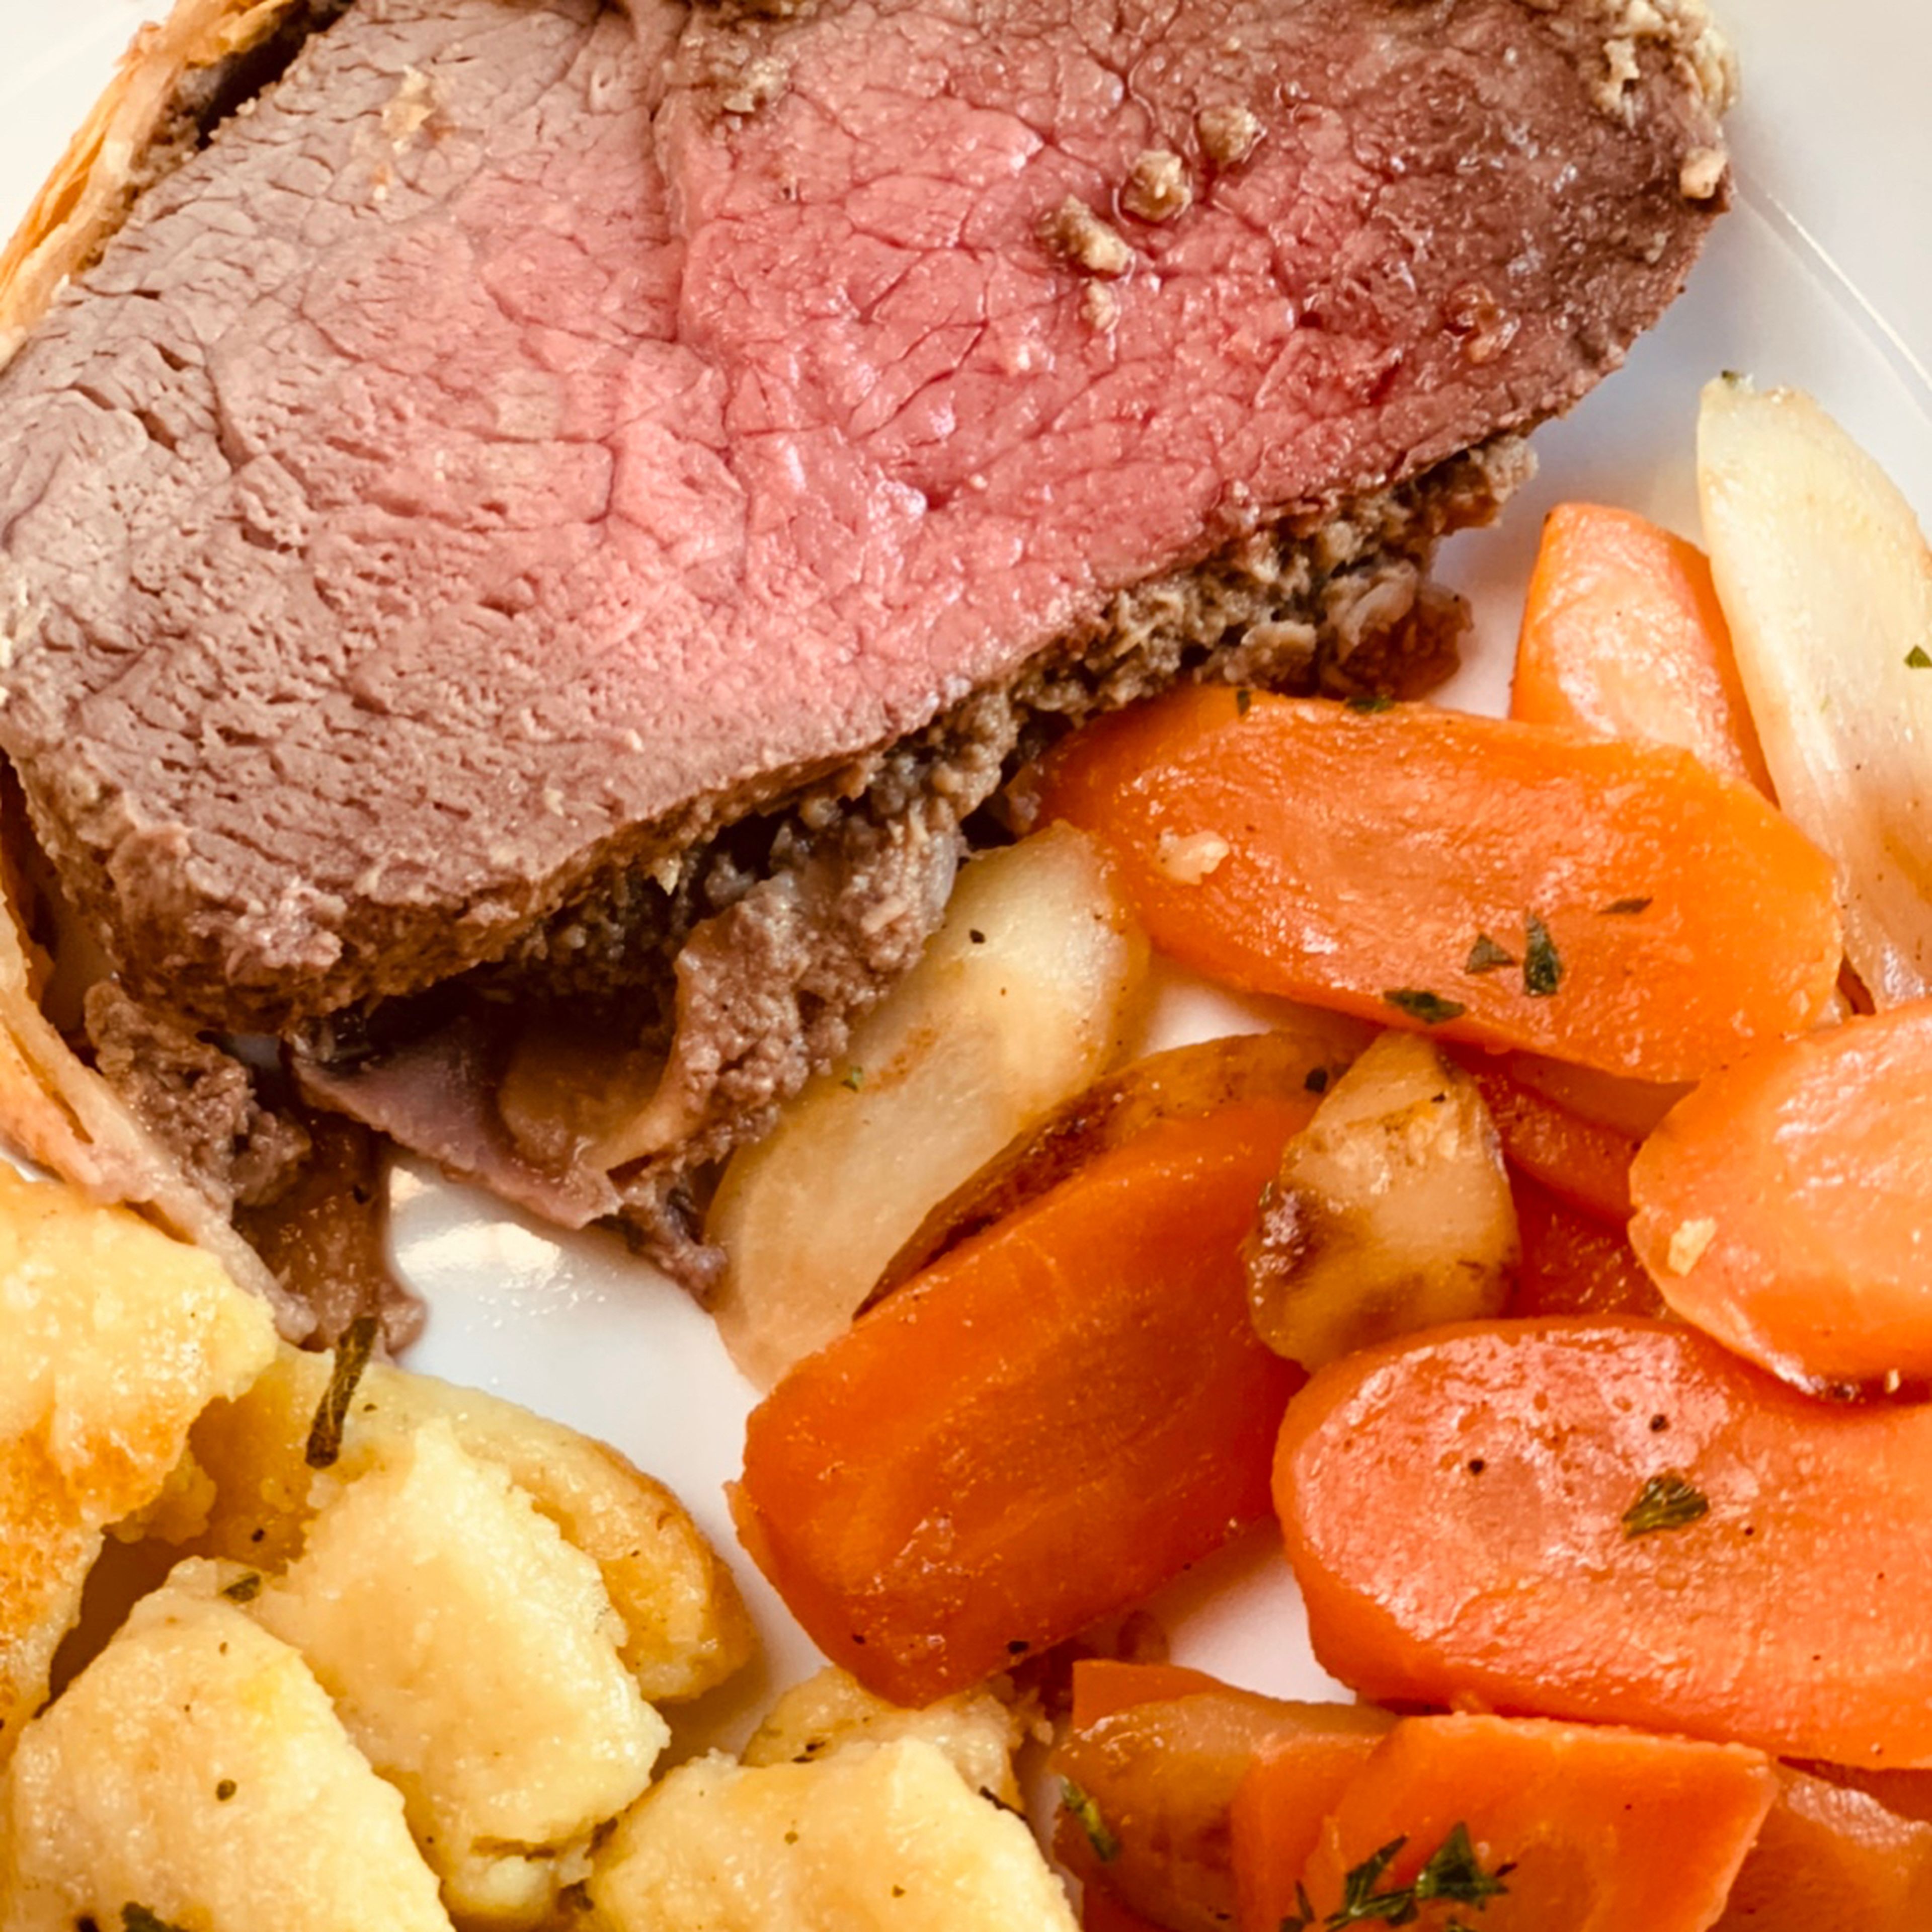 Tipp: Das Beef Wellington mit Gemüse servieren. Karotten, Pertersilienwurzel und Kartoffeln eignen sich hierfür sehr gut.